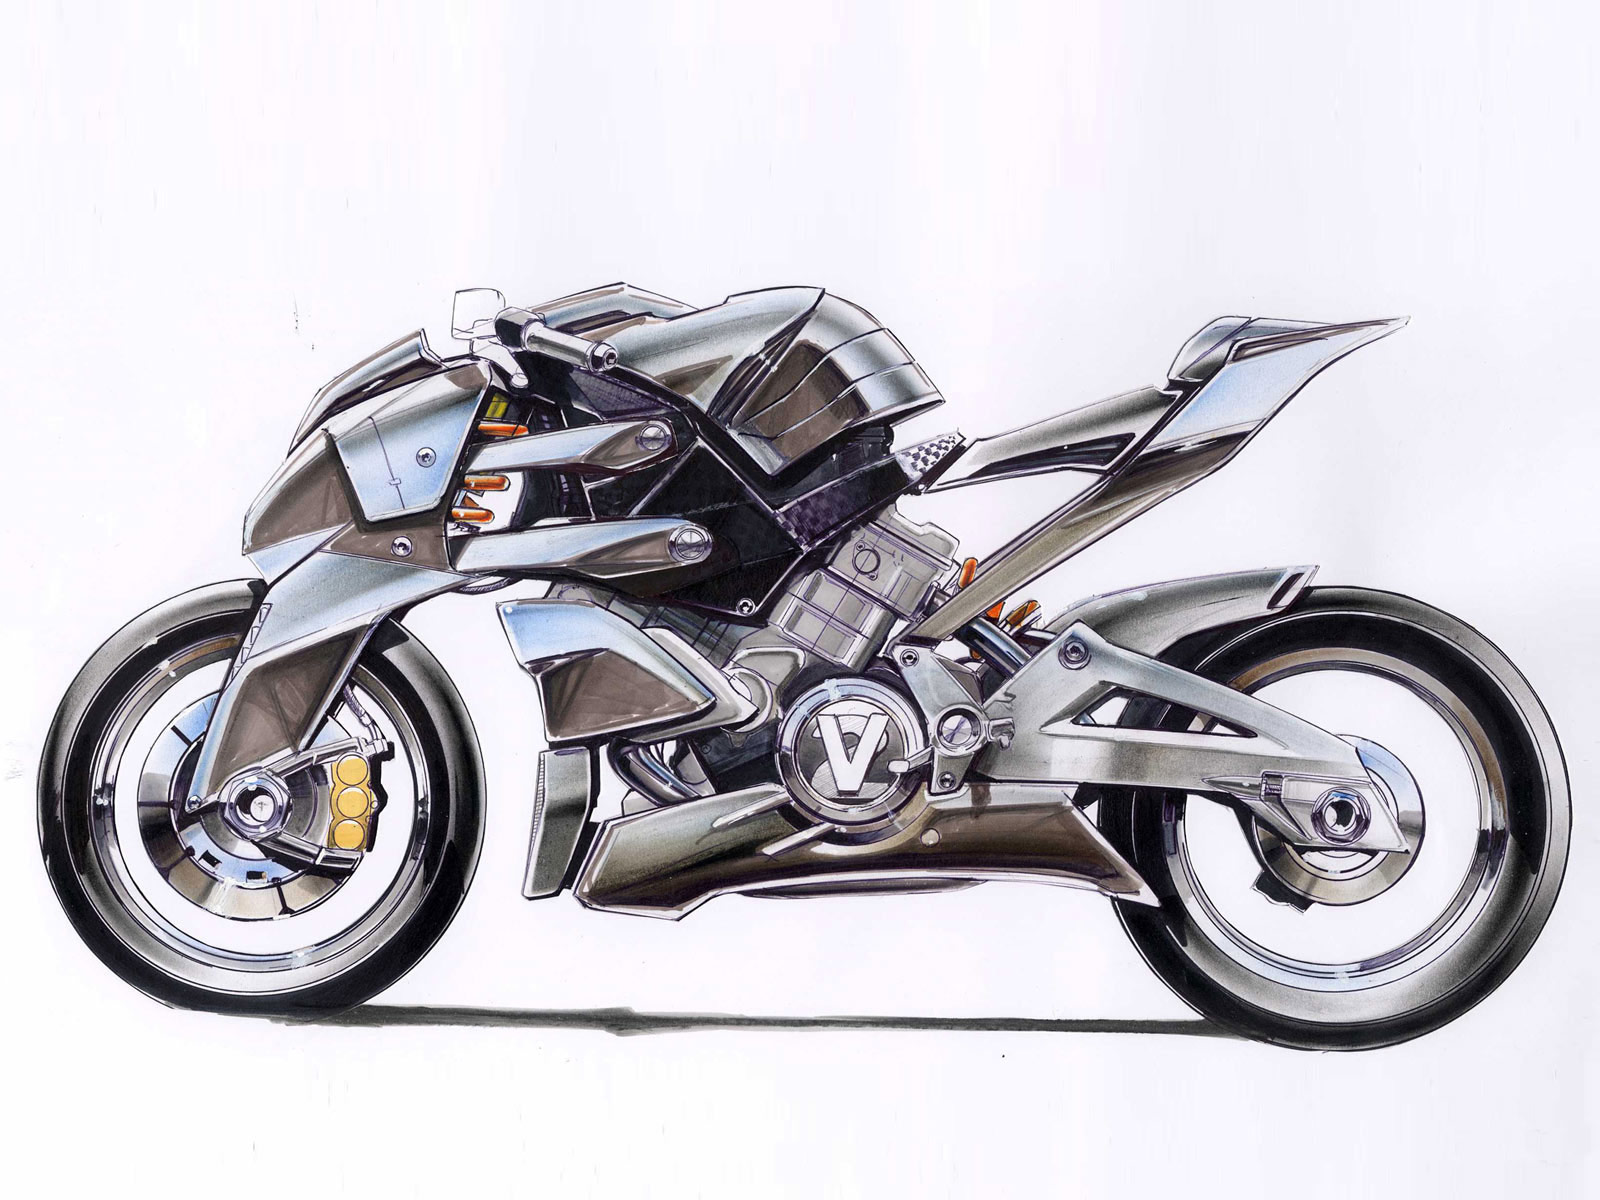 Kumpulan Gambar Sepeda Motor Mewah Terbaru Stamodifikasi Gambar